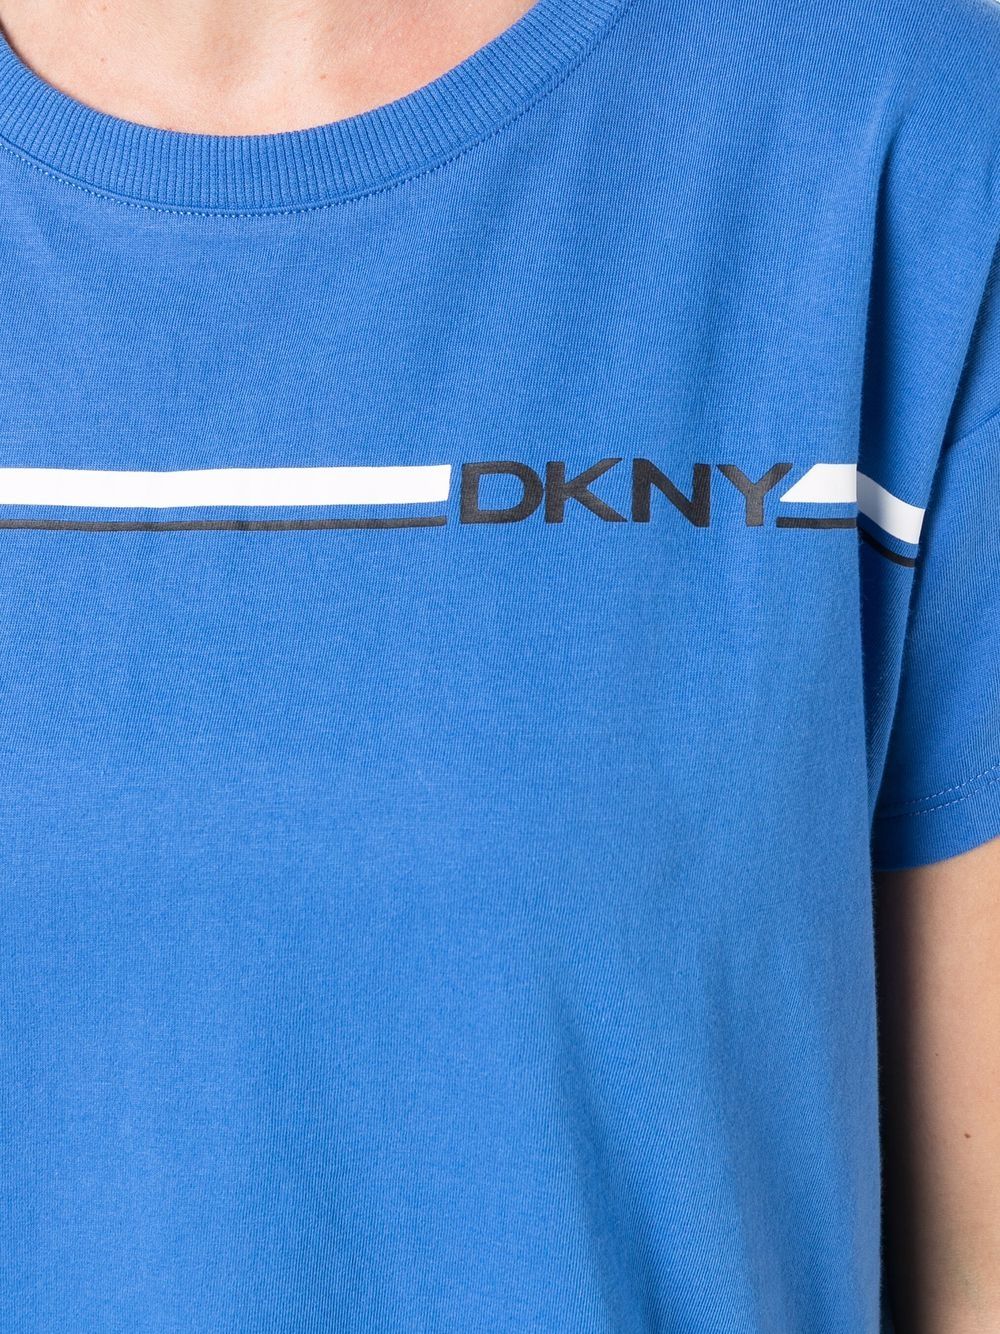 фото Dkny футболка с логотипом